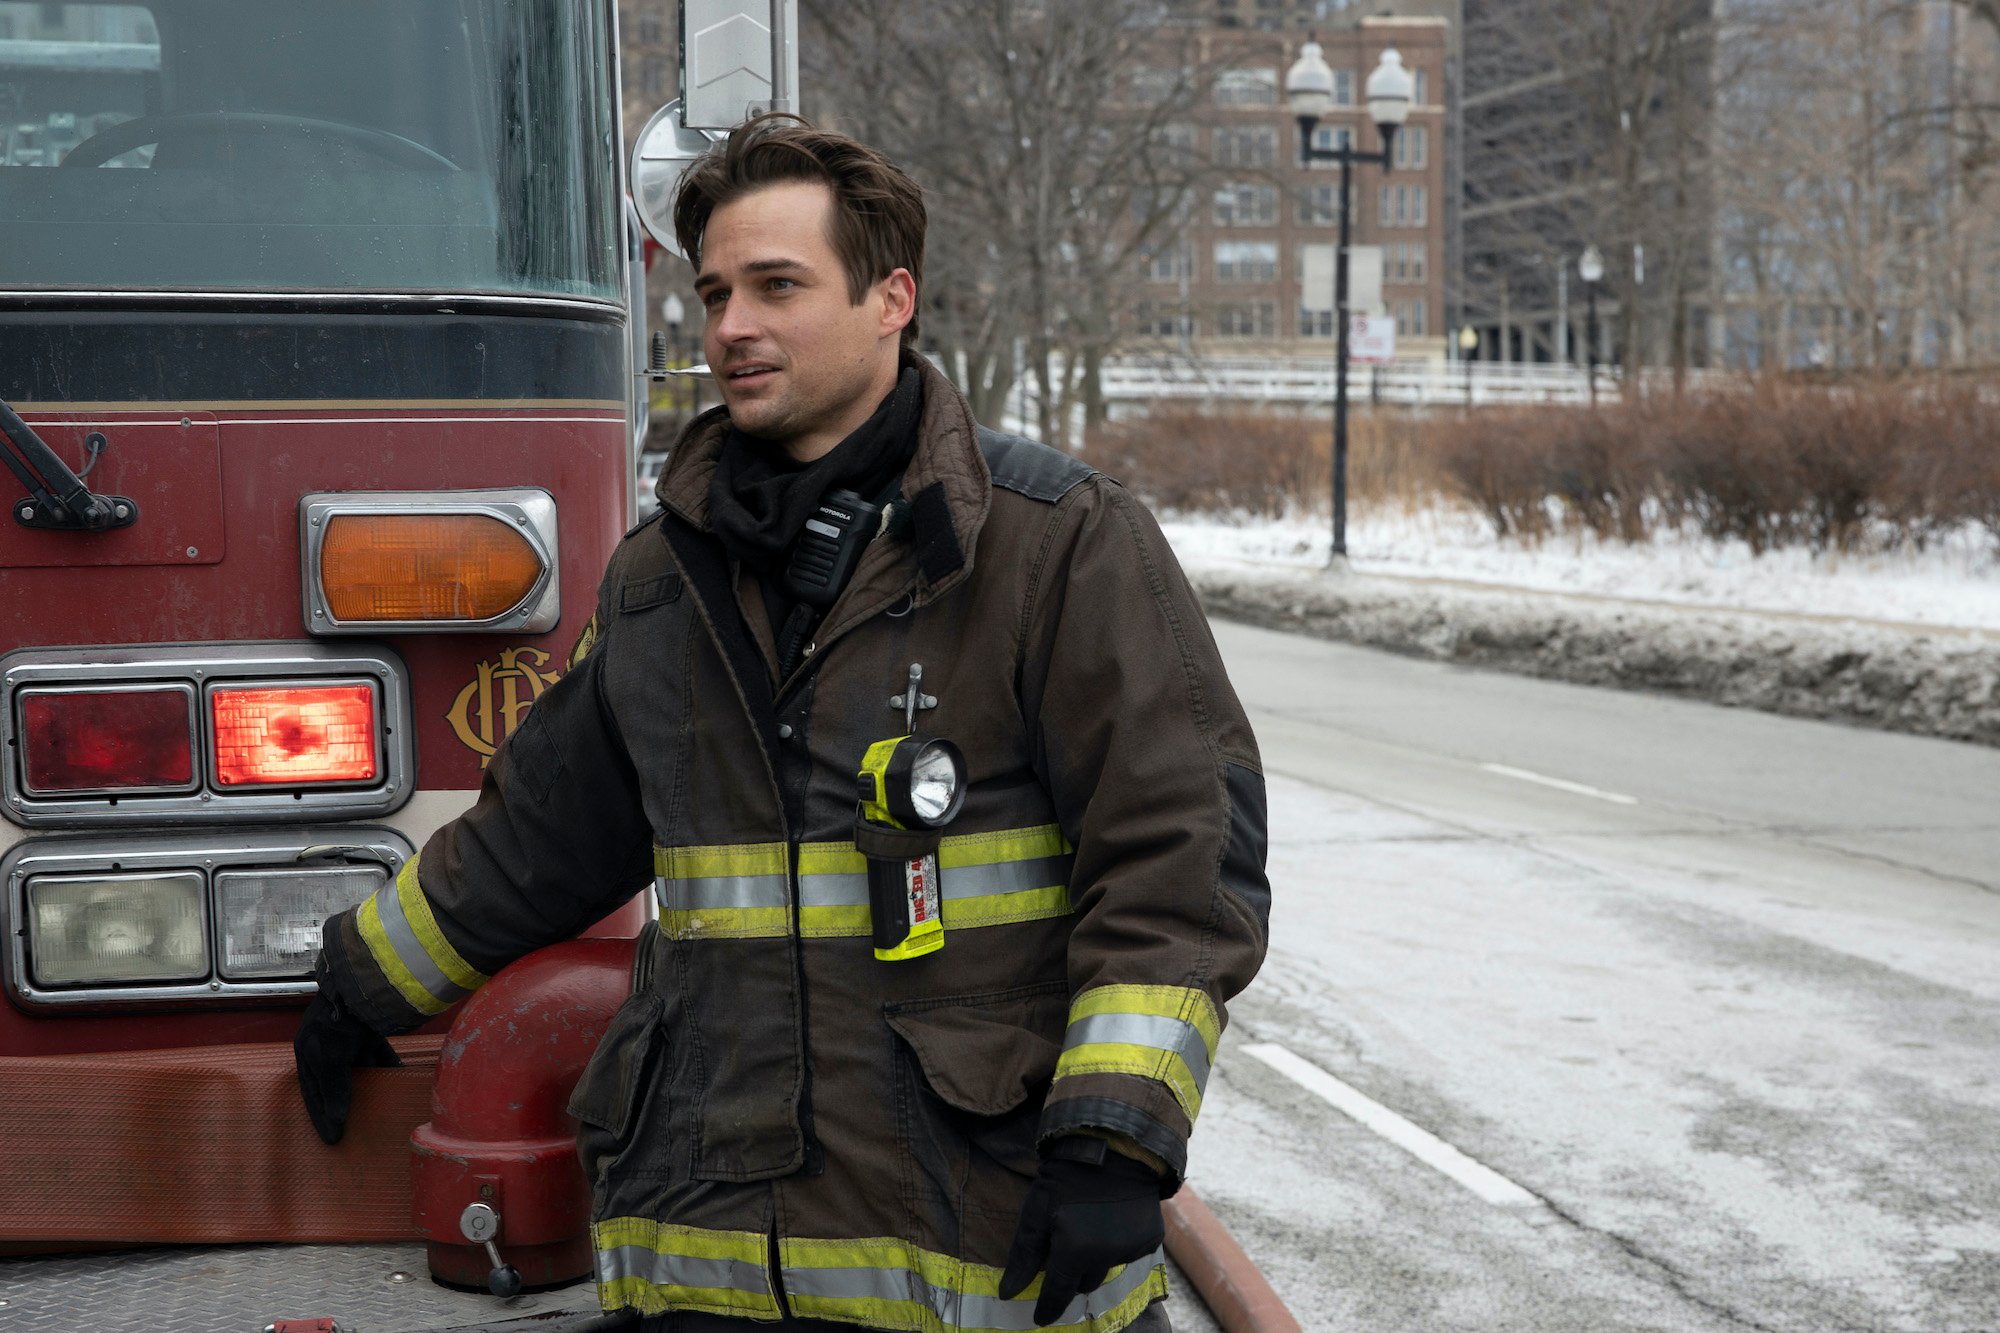 Jon-Michael Ecker in front of a fire truck